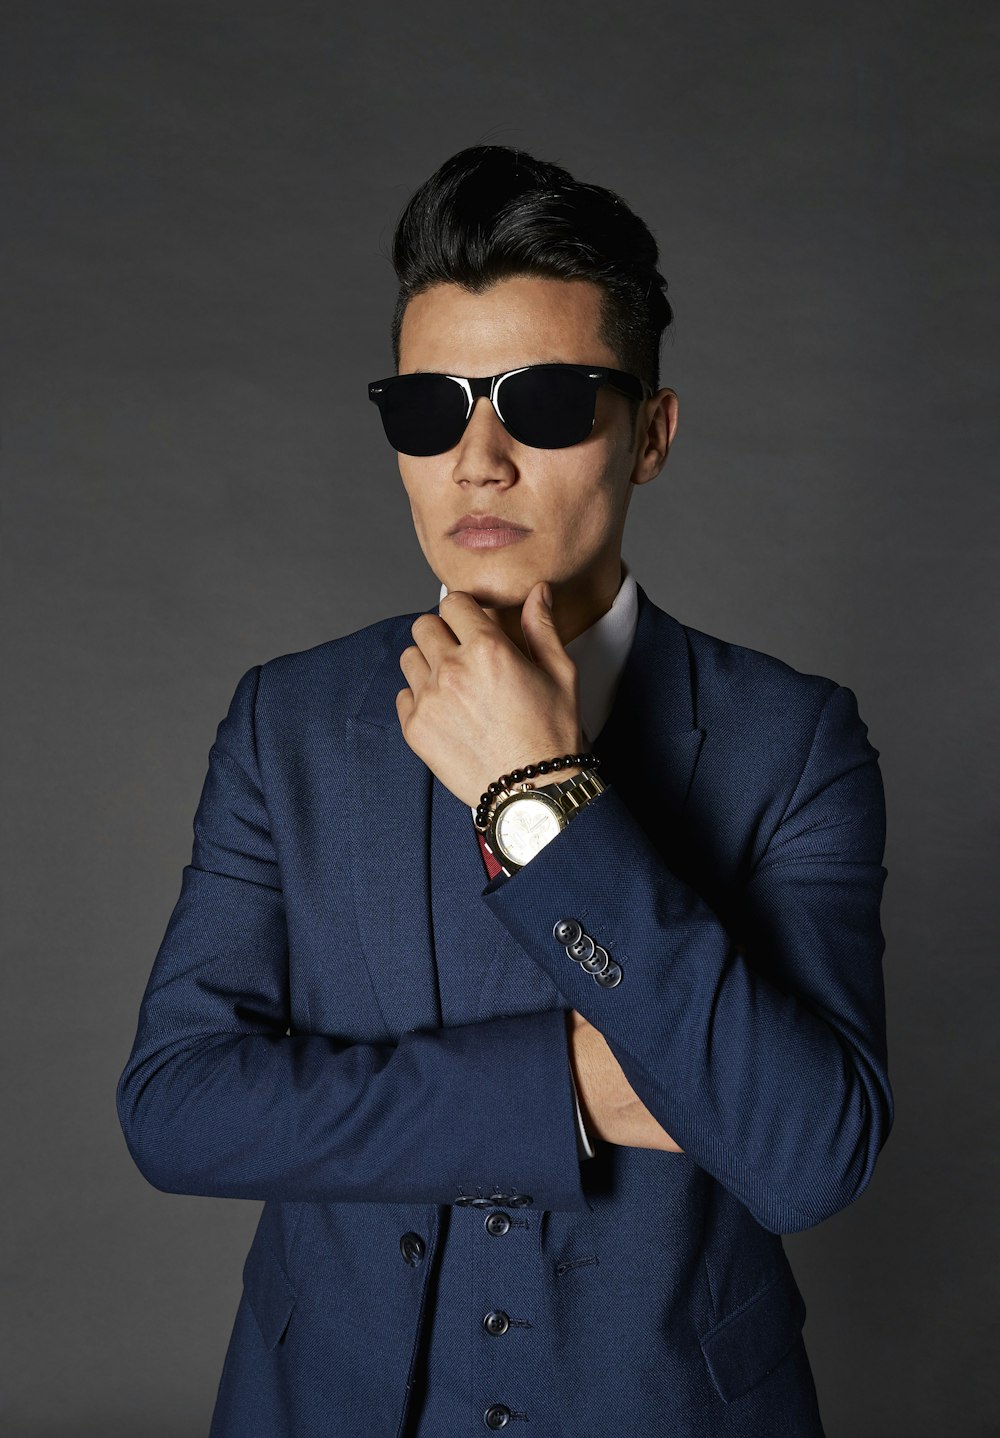 Mann im blauen Anzug mit schwarzer Sonnenbrille